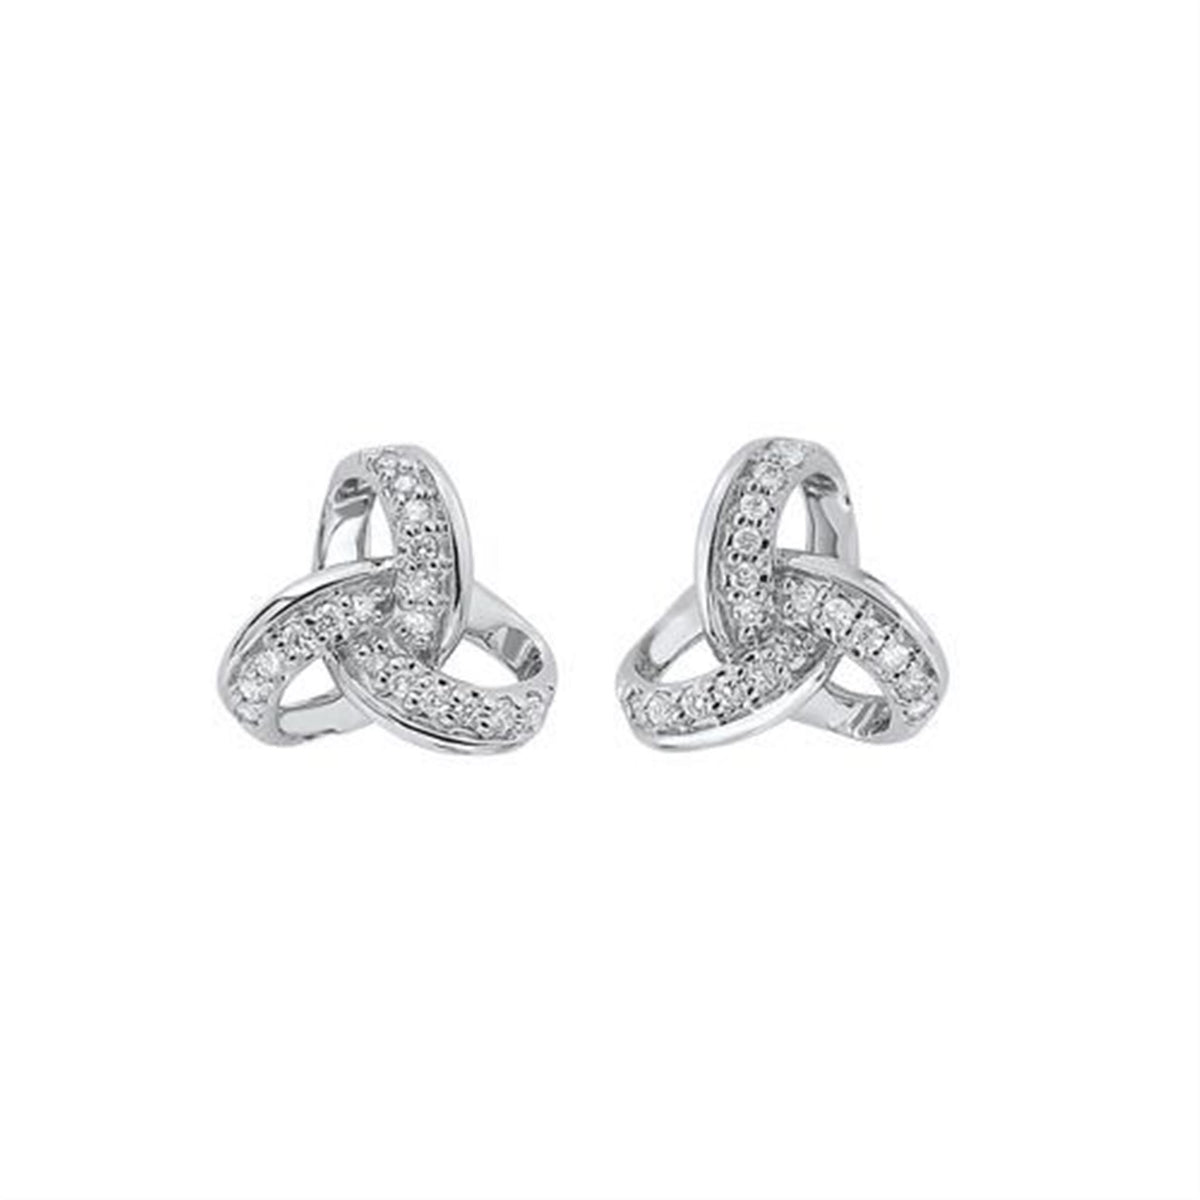 10kt White Gold Diamond Love Knot Earrings